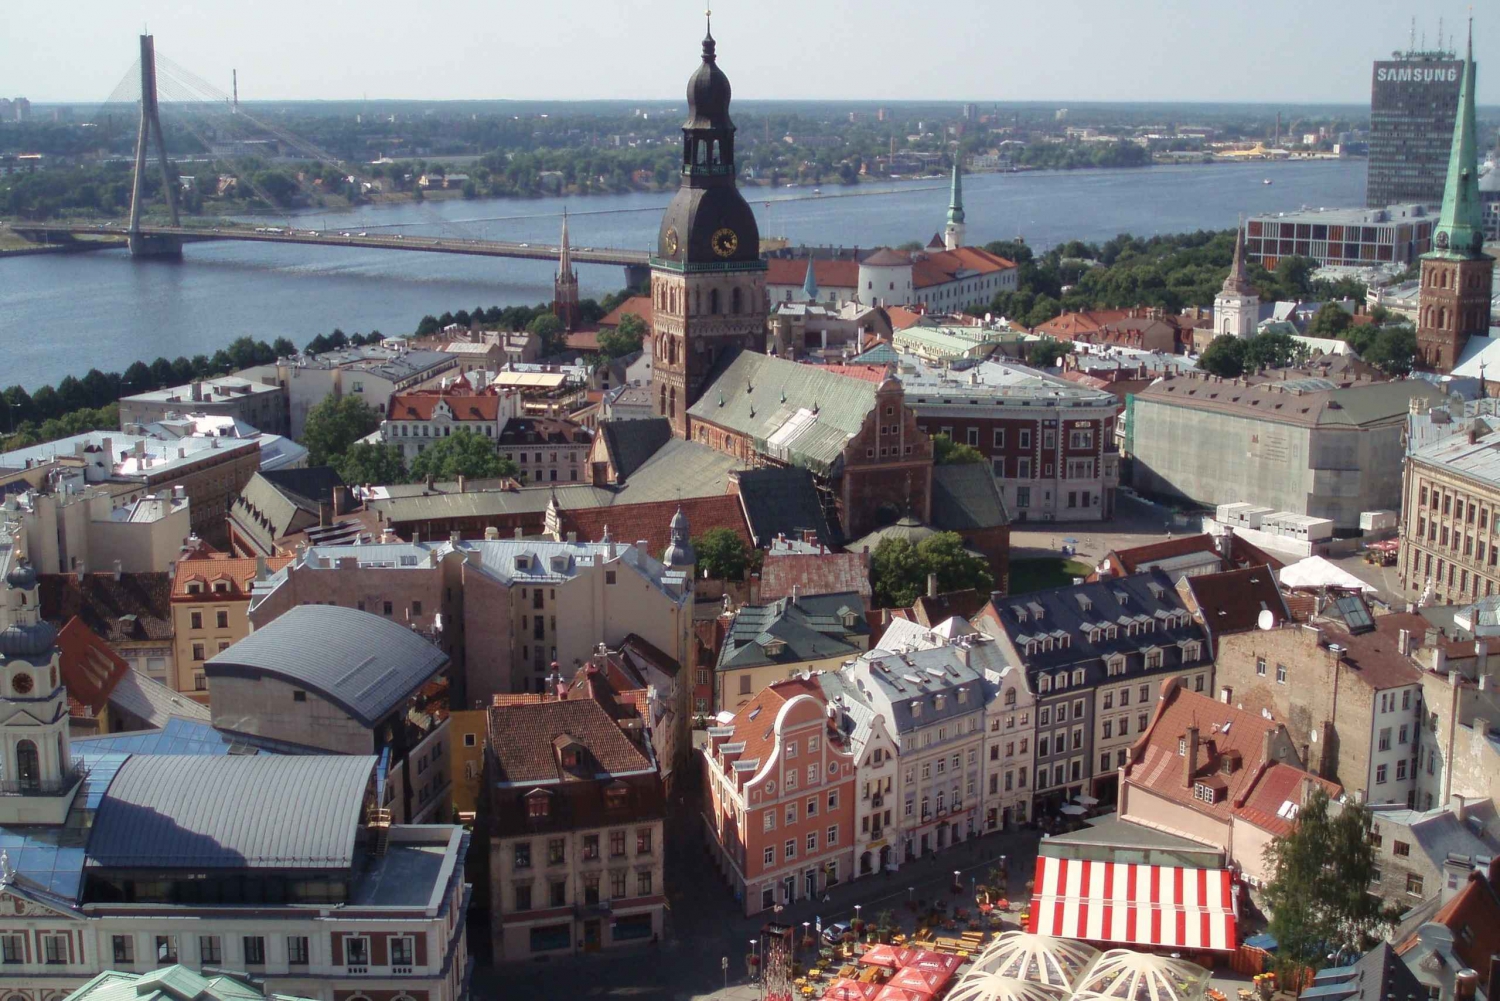 Riga walking/ transportation sightseeing tour